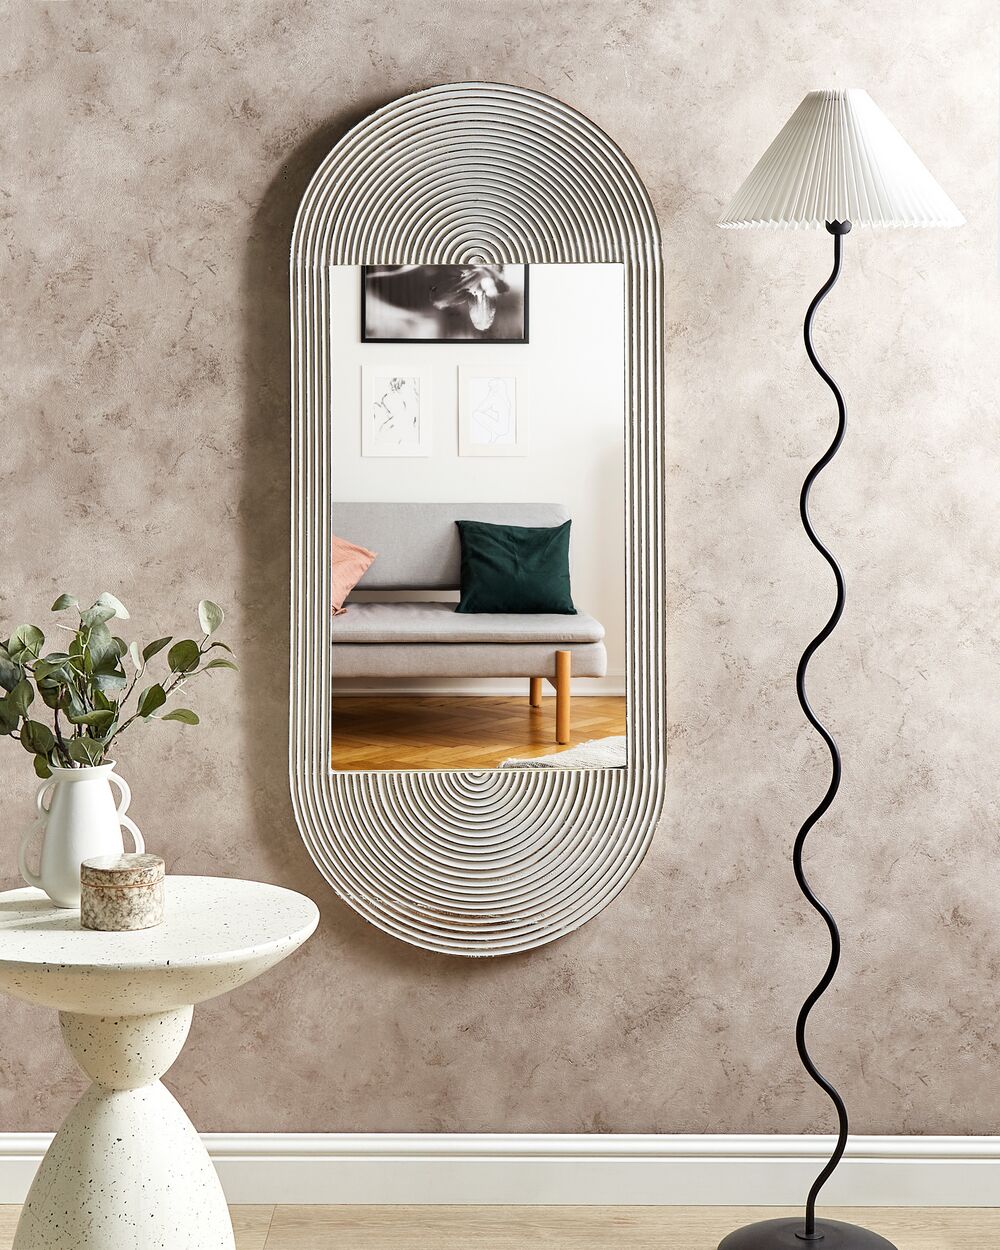 specchio da parete 82 x 35 x 4 cm Specchio da parete lungo con 4